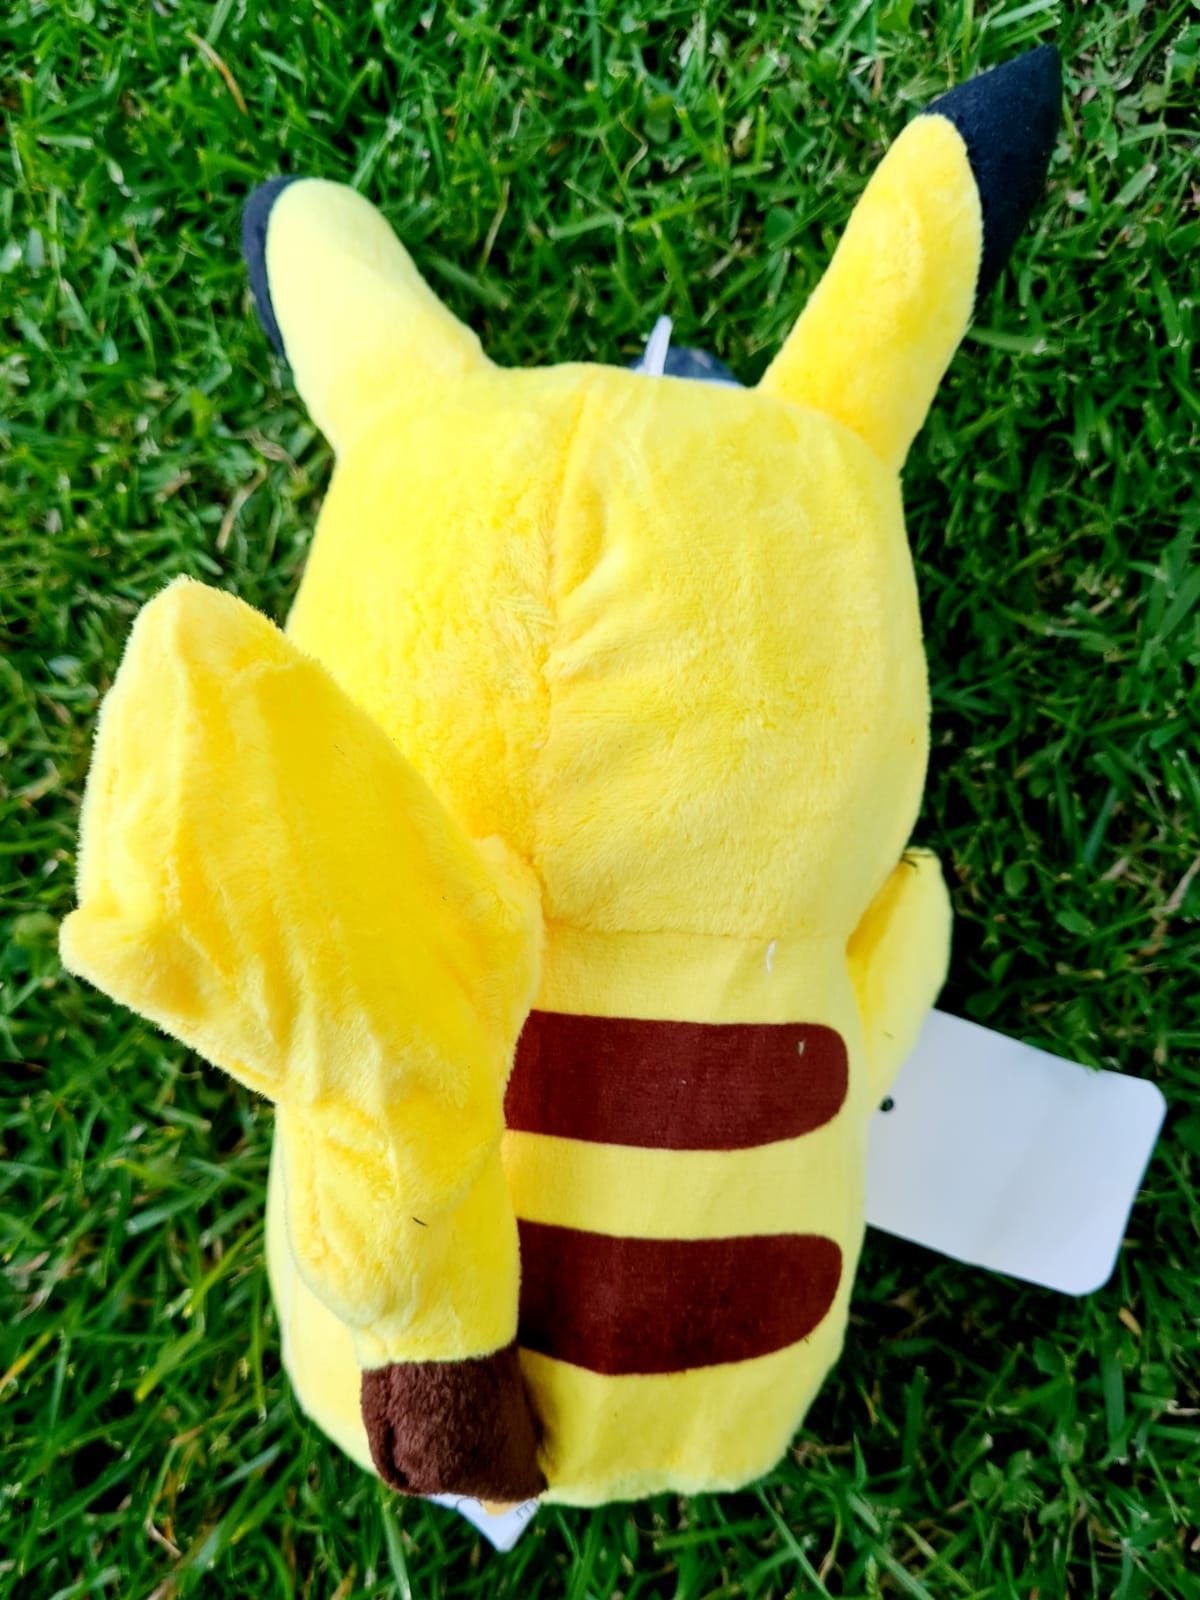 Maskotka pluszak Pikachu Pokemon zabawki nowa